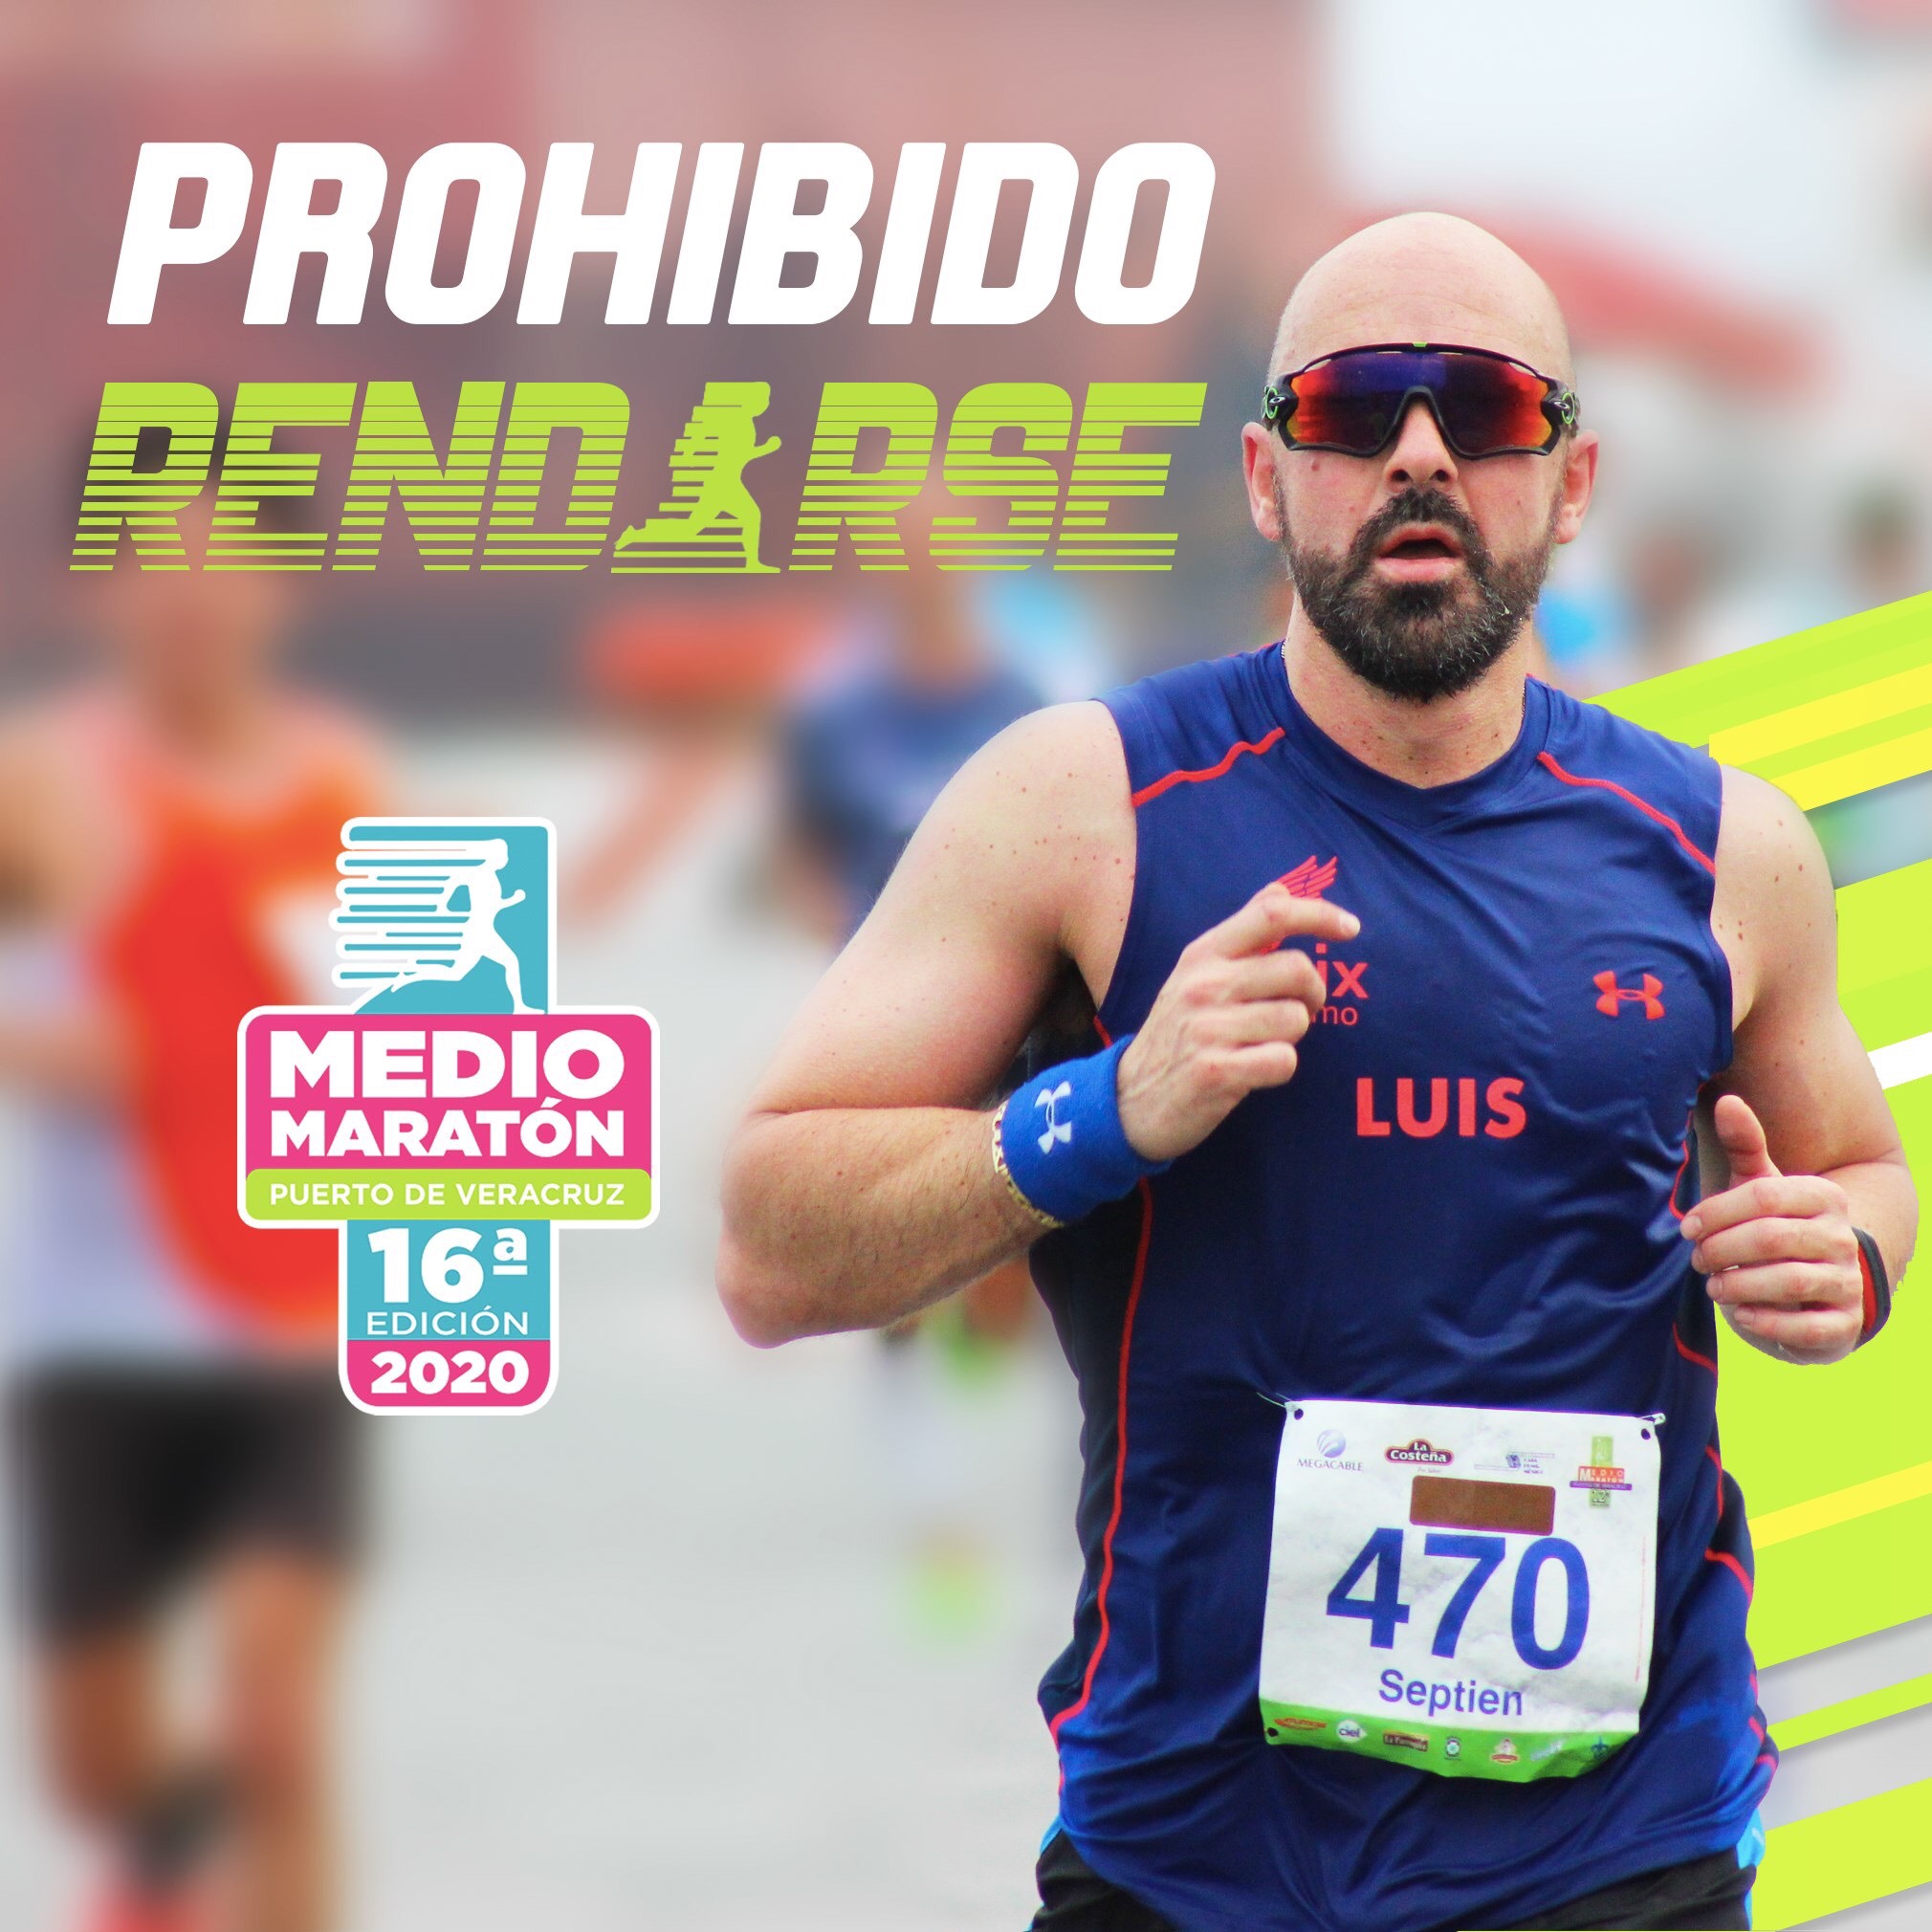 Esperan a nueve mil corredores en Medio Maratón Puerto de Veracruz 2020